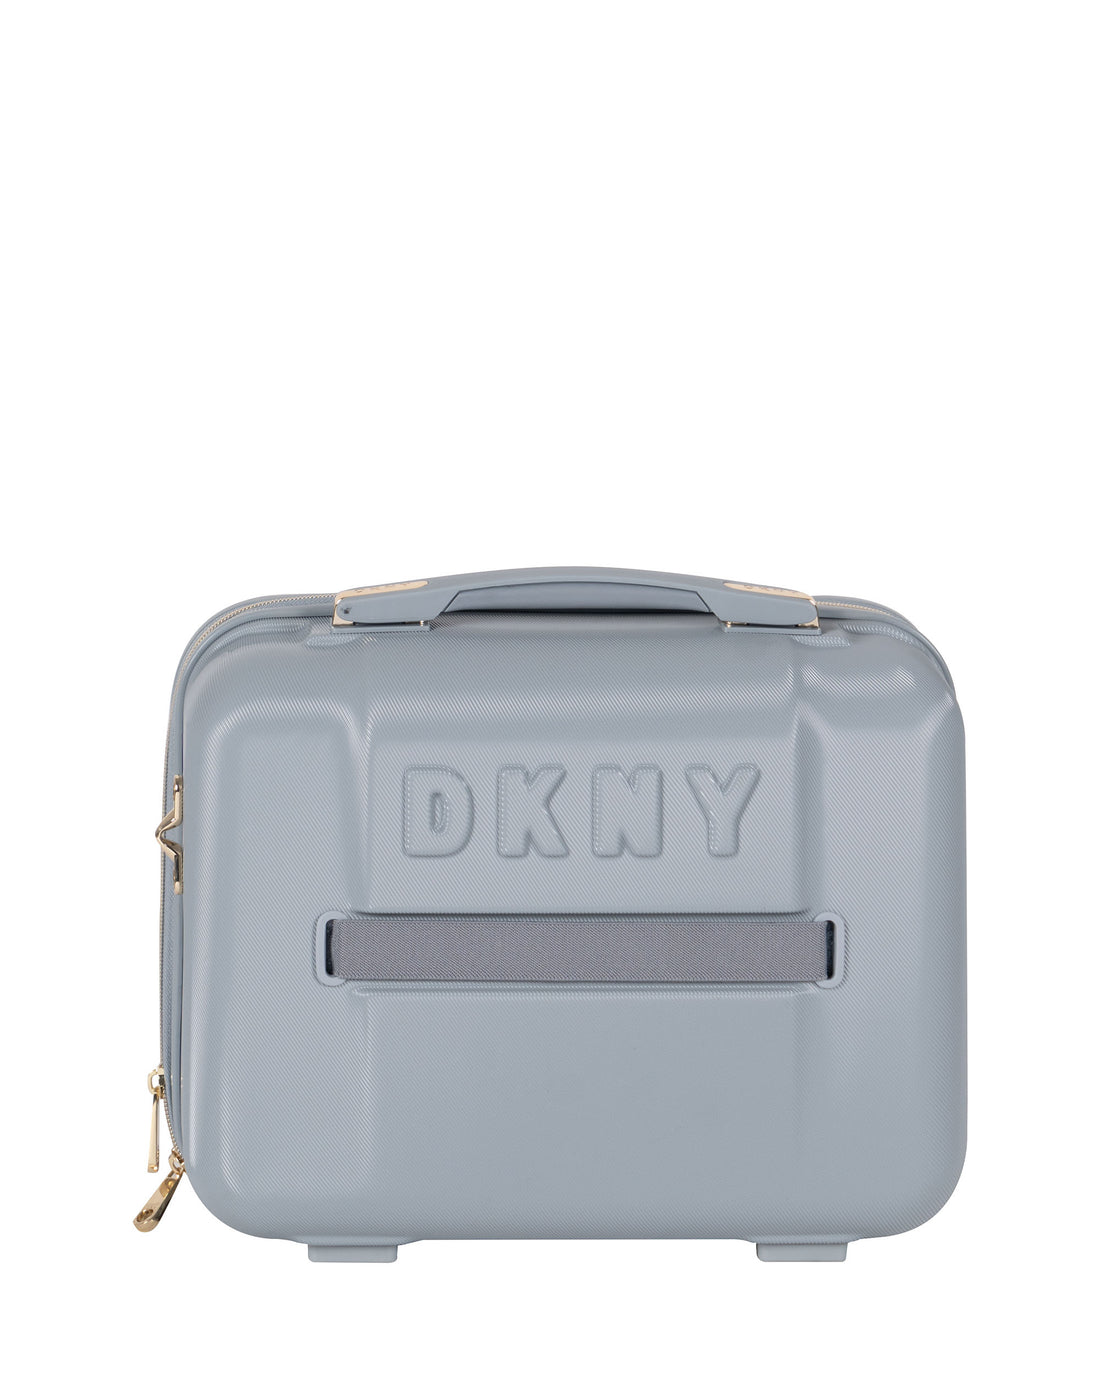 DKNY Grey Beauty Case